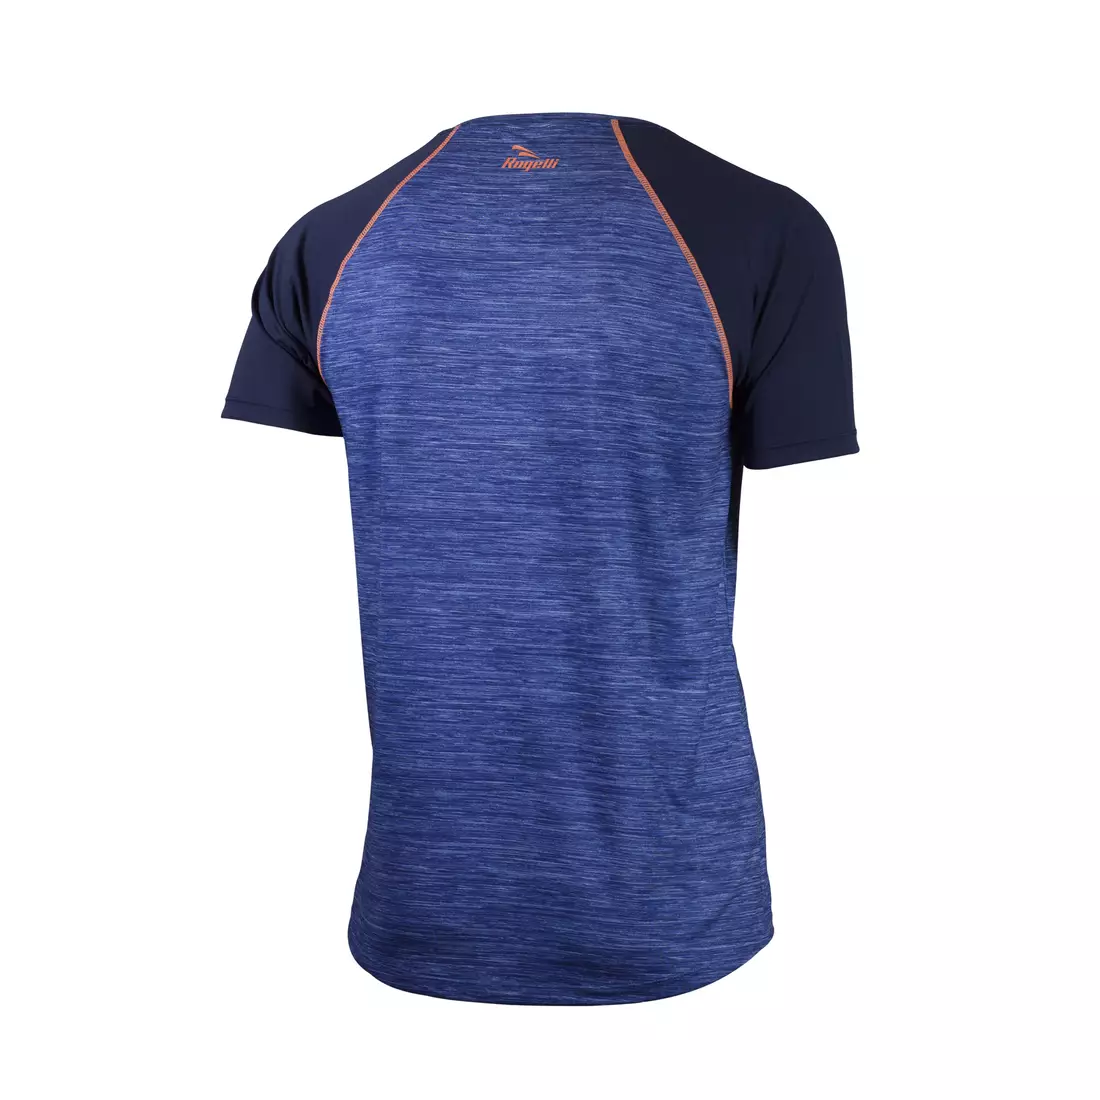 ROGELLI RUN STRUCTURE 830.240 - pánské běžecké tričko K/R, modré a oranžové